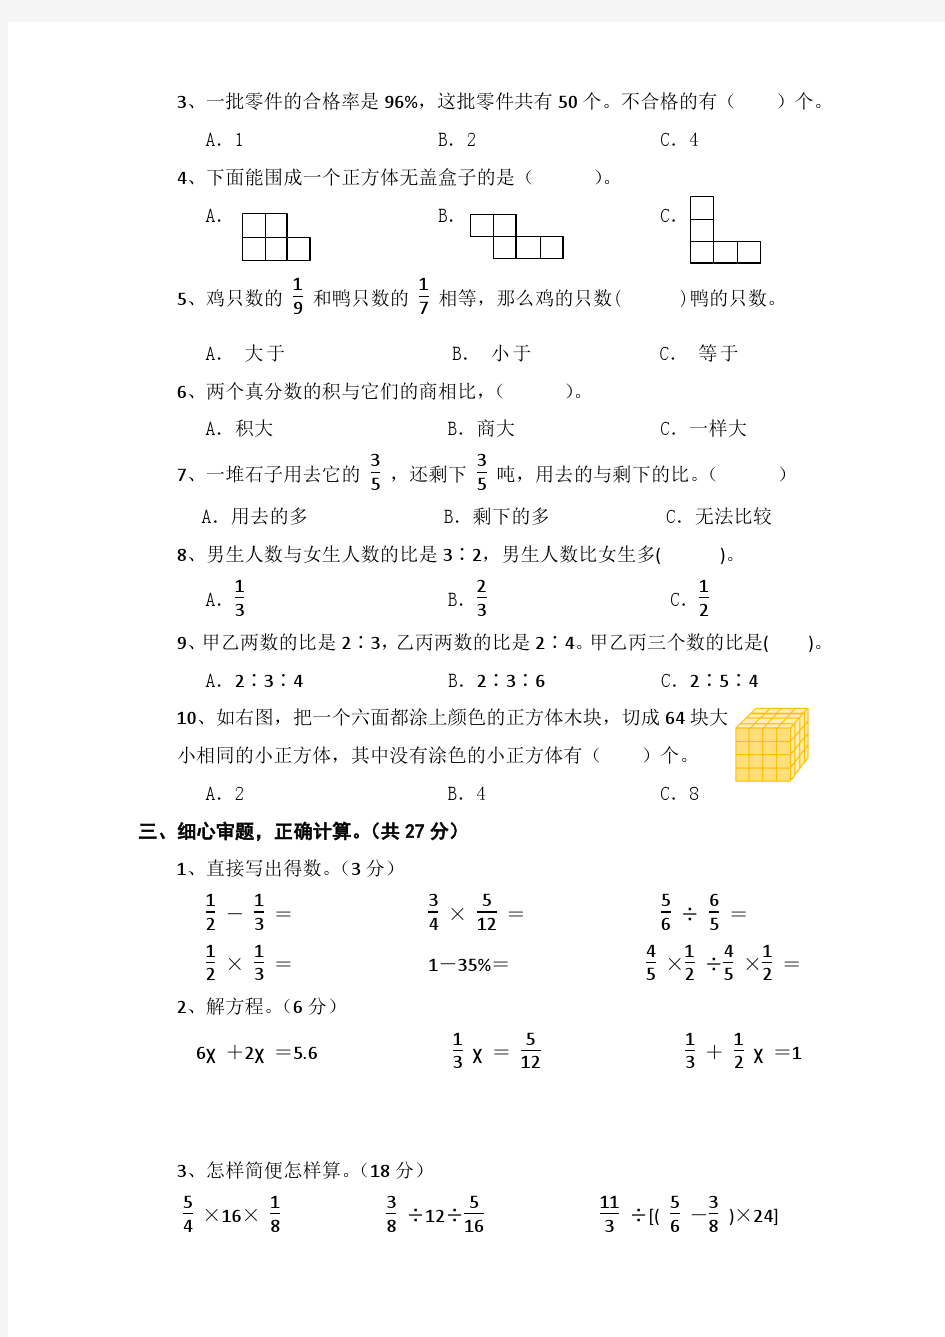 吴江市实验小学爱德校区六年级数学学科期末考试卷